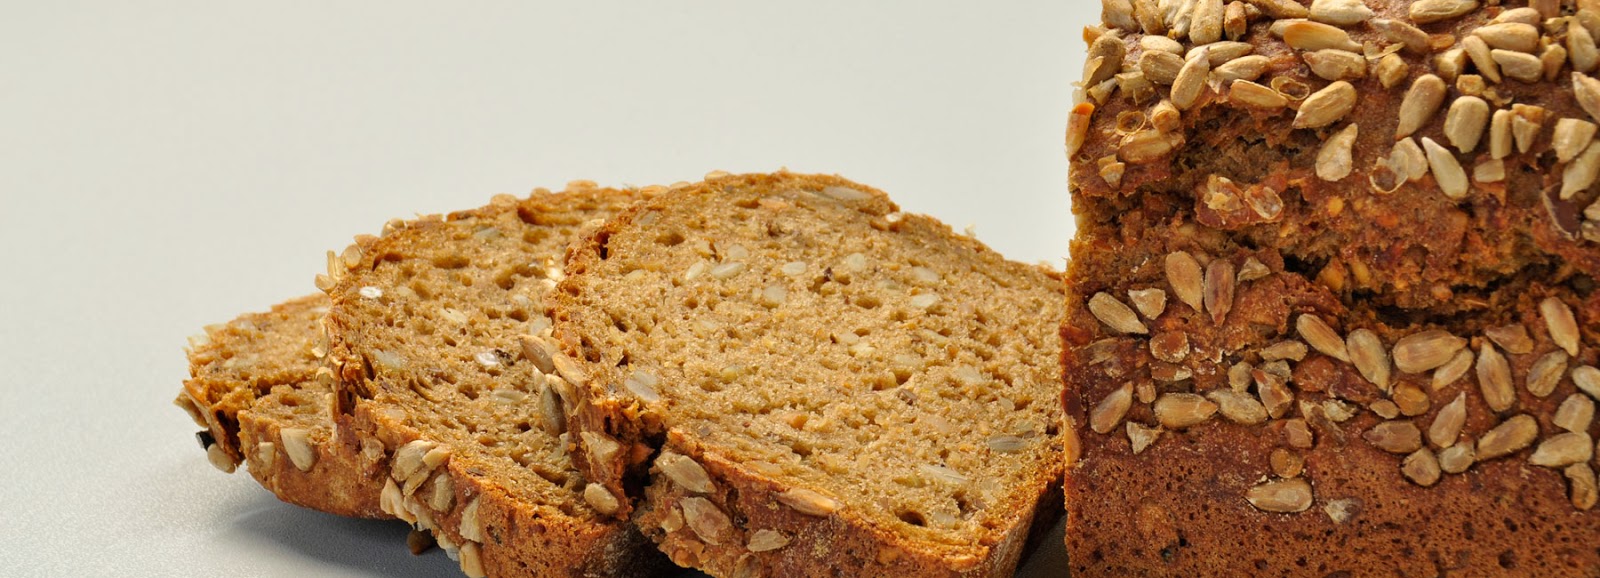 Pirjon blogi: Saksalainen leipä maailman kulttuuriperinnöksi?